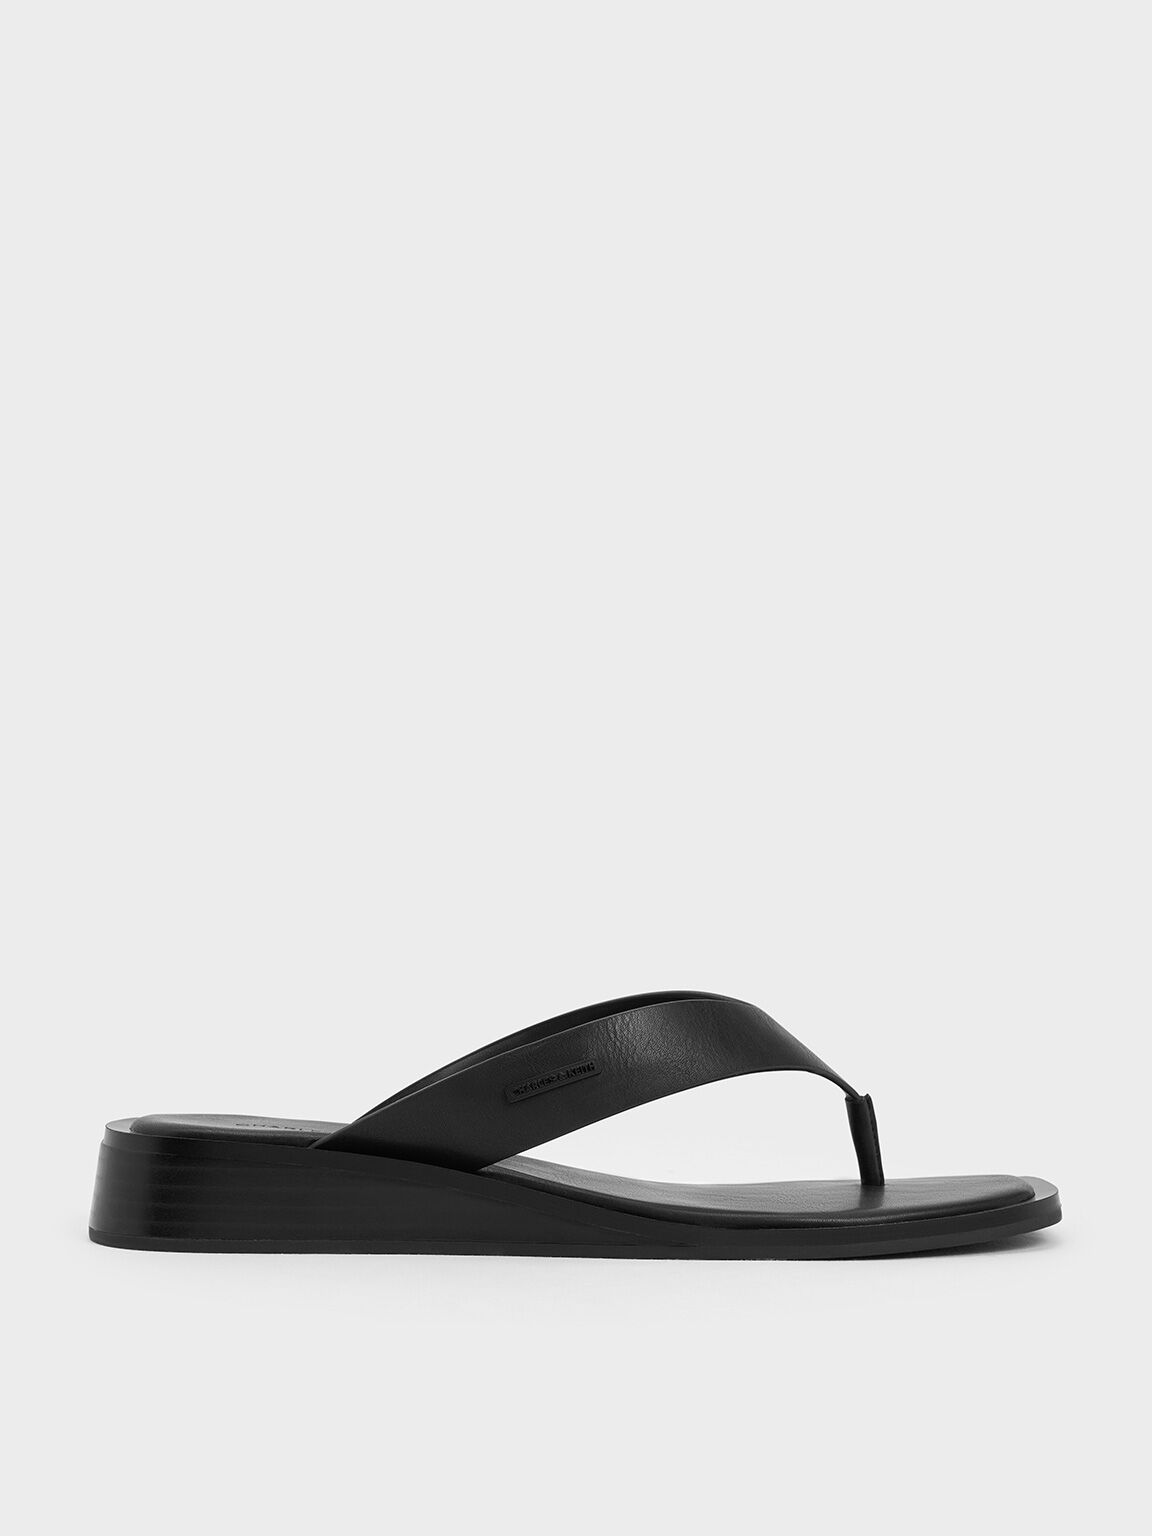 V-Strap Wedge Thong Sandals, Black, hi-res